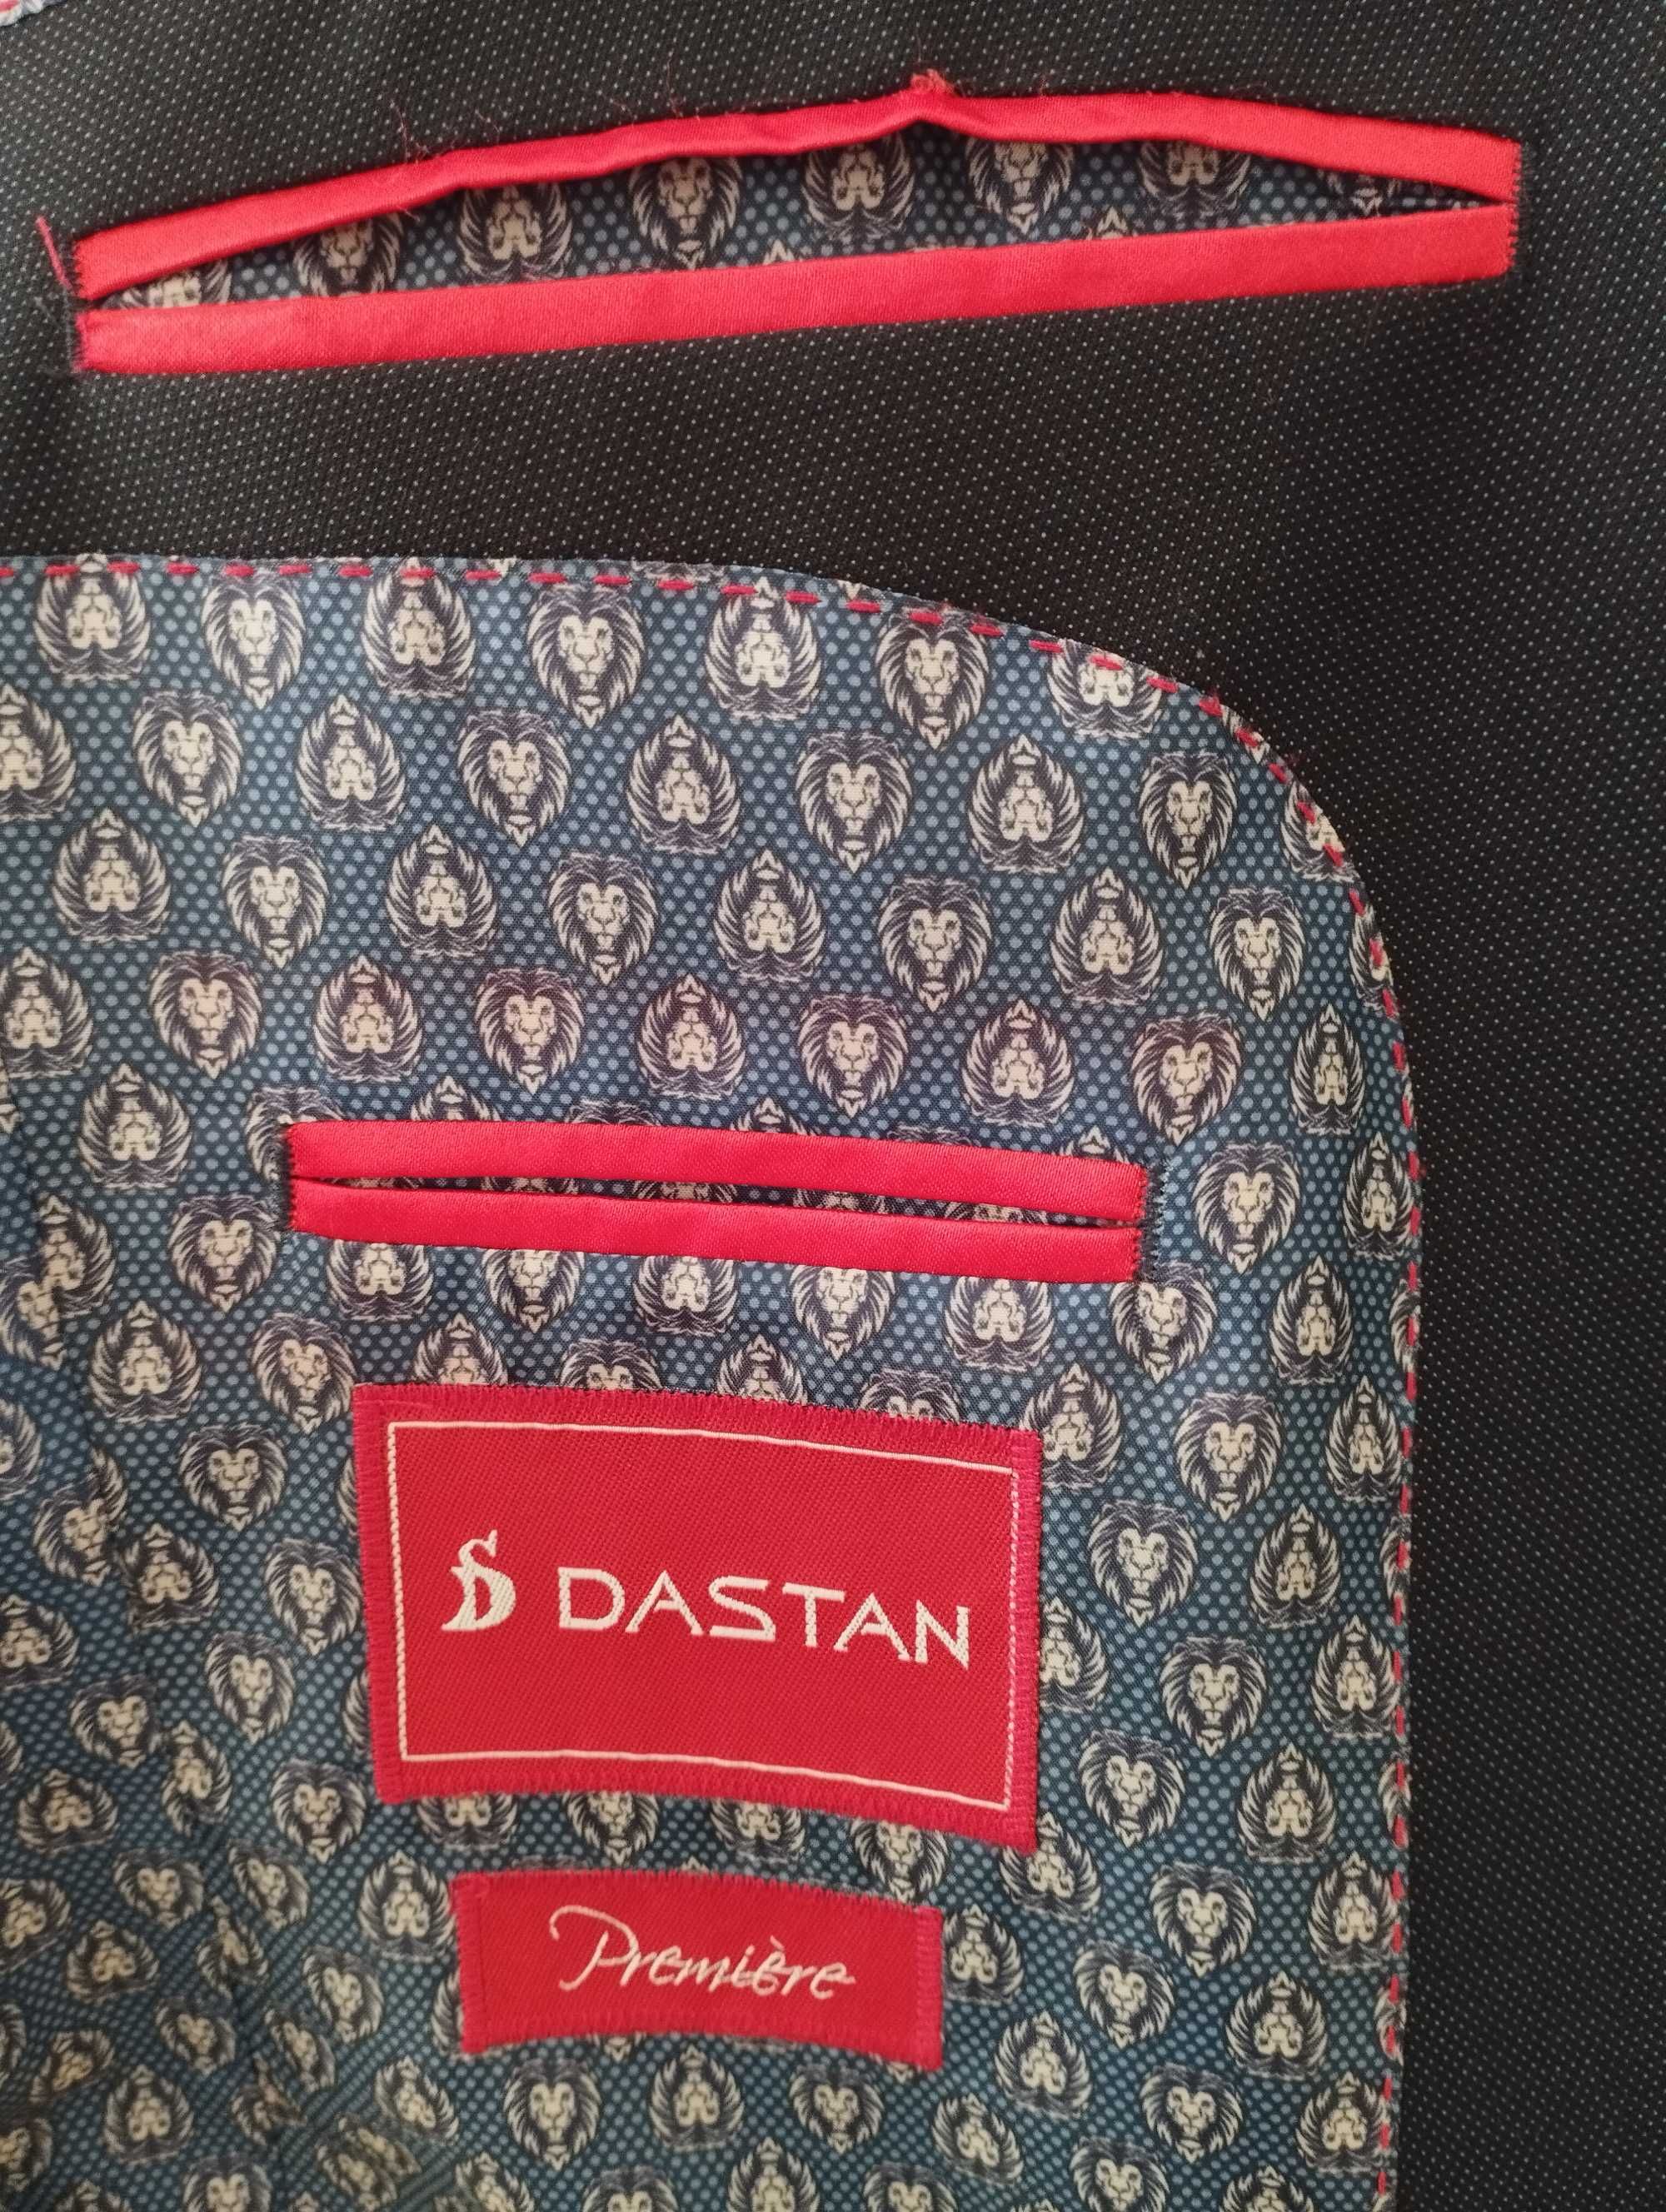 Garniutur męski/młodzieżowy marki Dastan